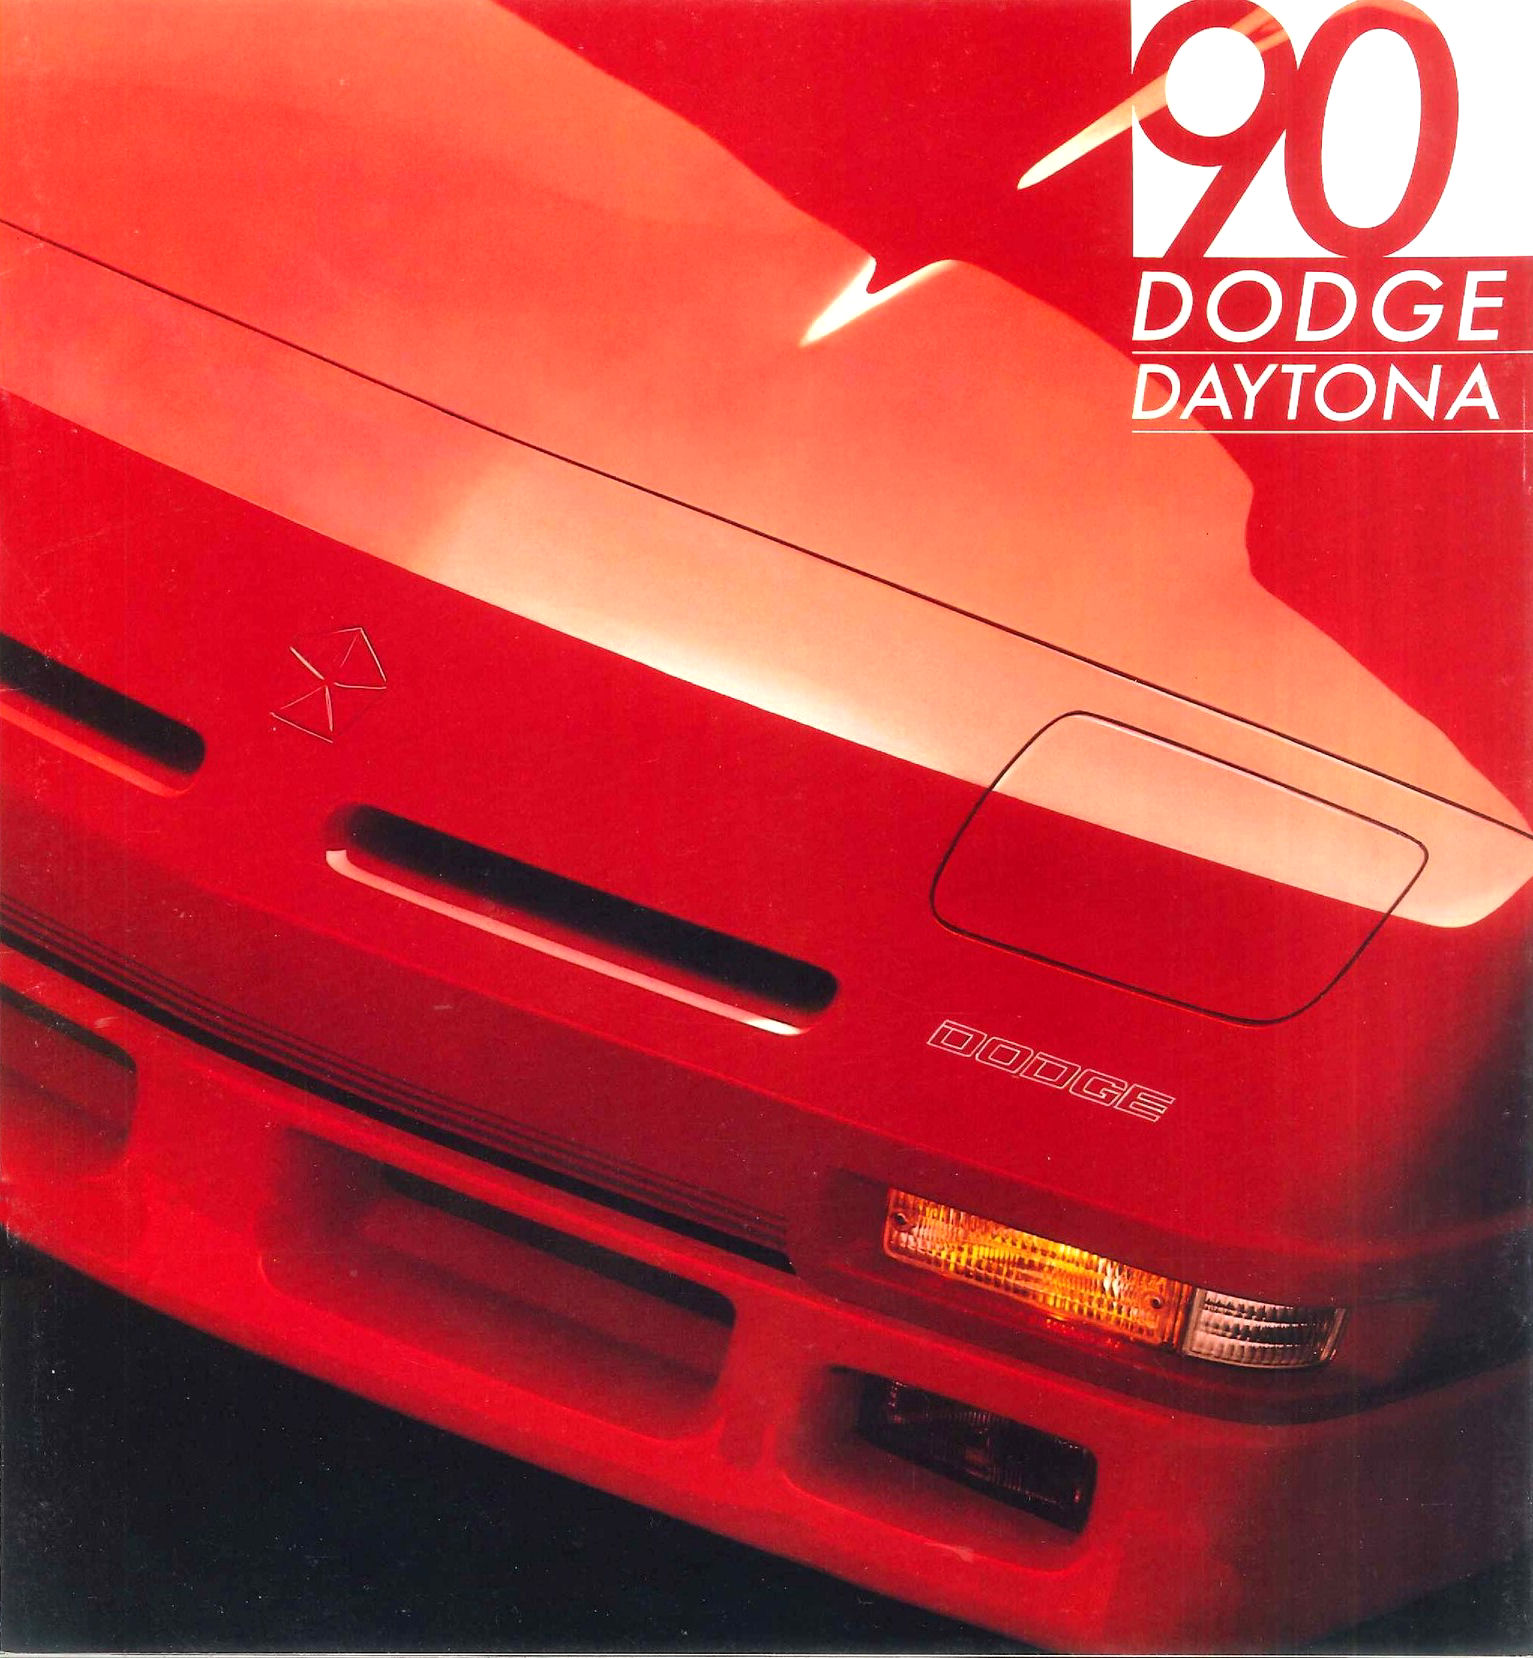 1990_Dodge_Daytona-01